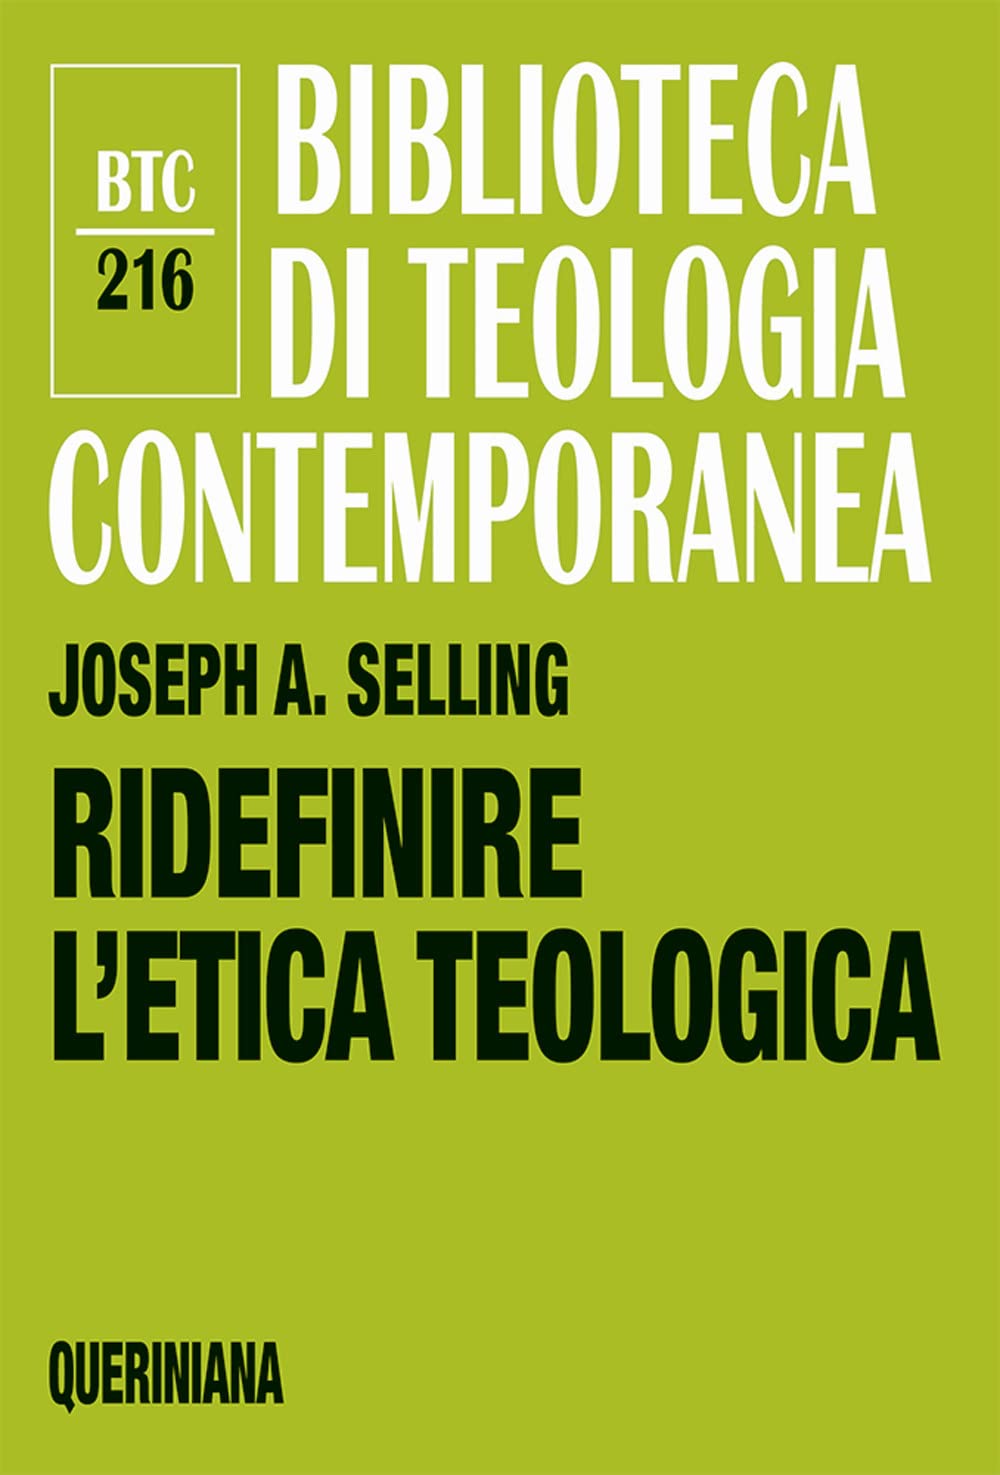 Libri Selling Joseph A. - Ridefinire L'etica Teologica NUOVO SIGILLATO, EDIZIONE DEL 20/02/2023 SUBITO DISPONIBILE